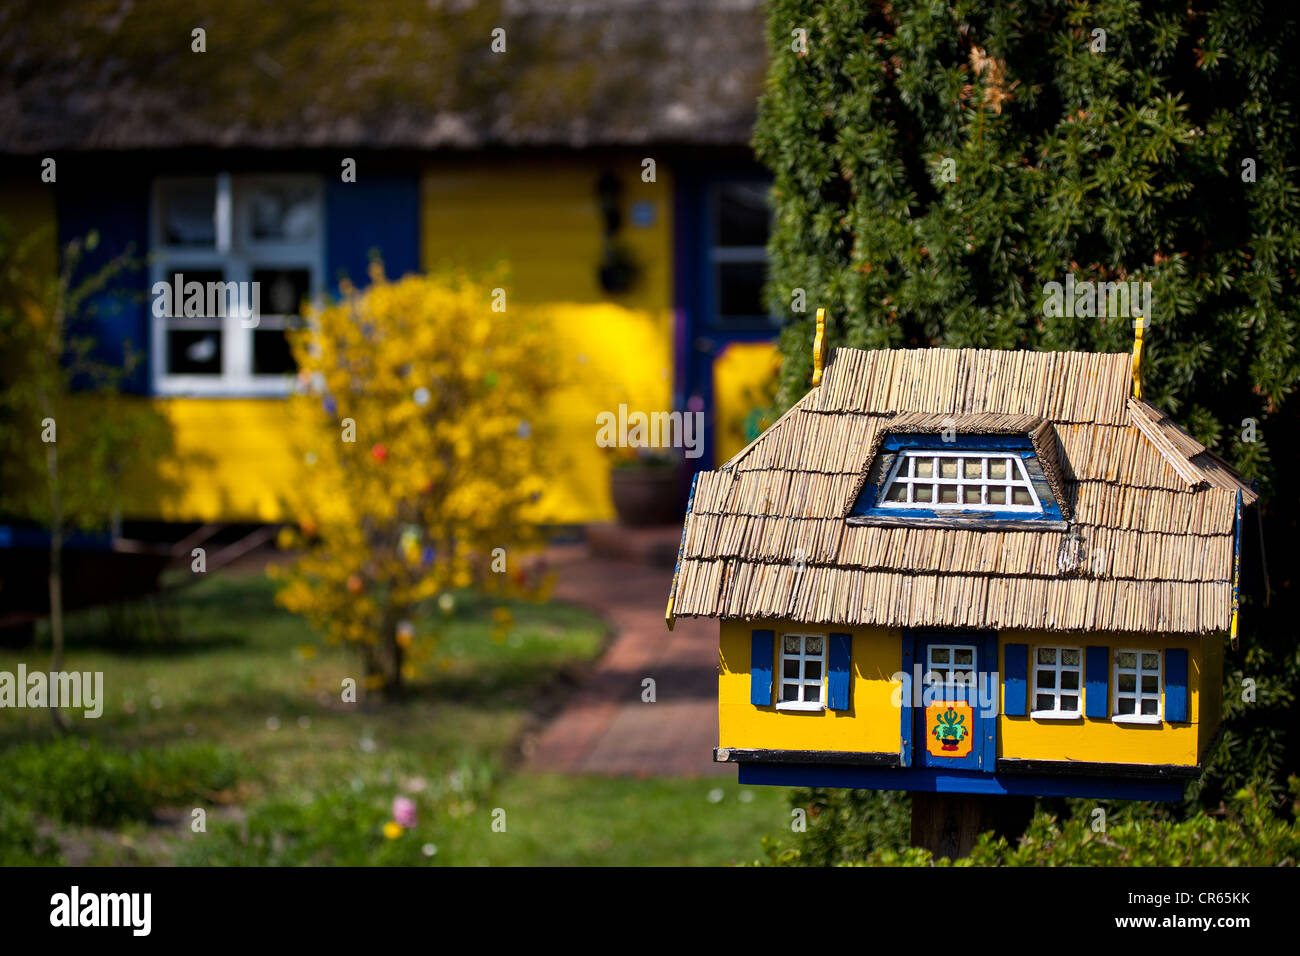 Briefkasten und Haus gebaut im gleichen Design, Born, North West Pomerania,  Deutschland, Europa Stockfotografie - Alamy